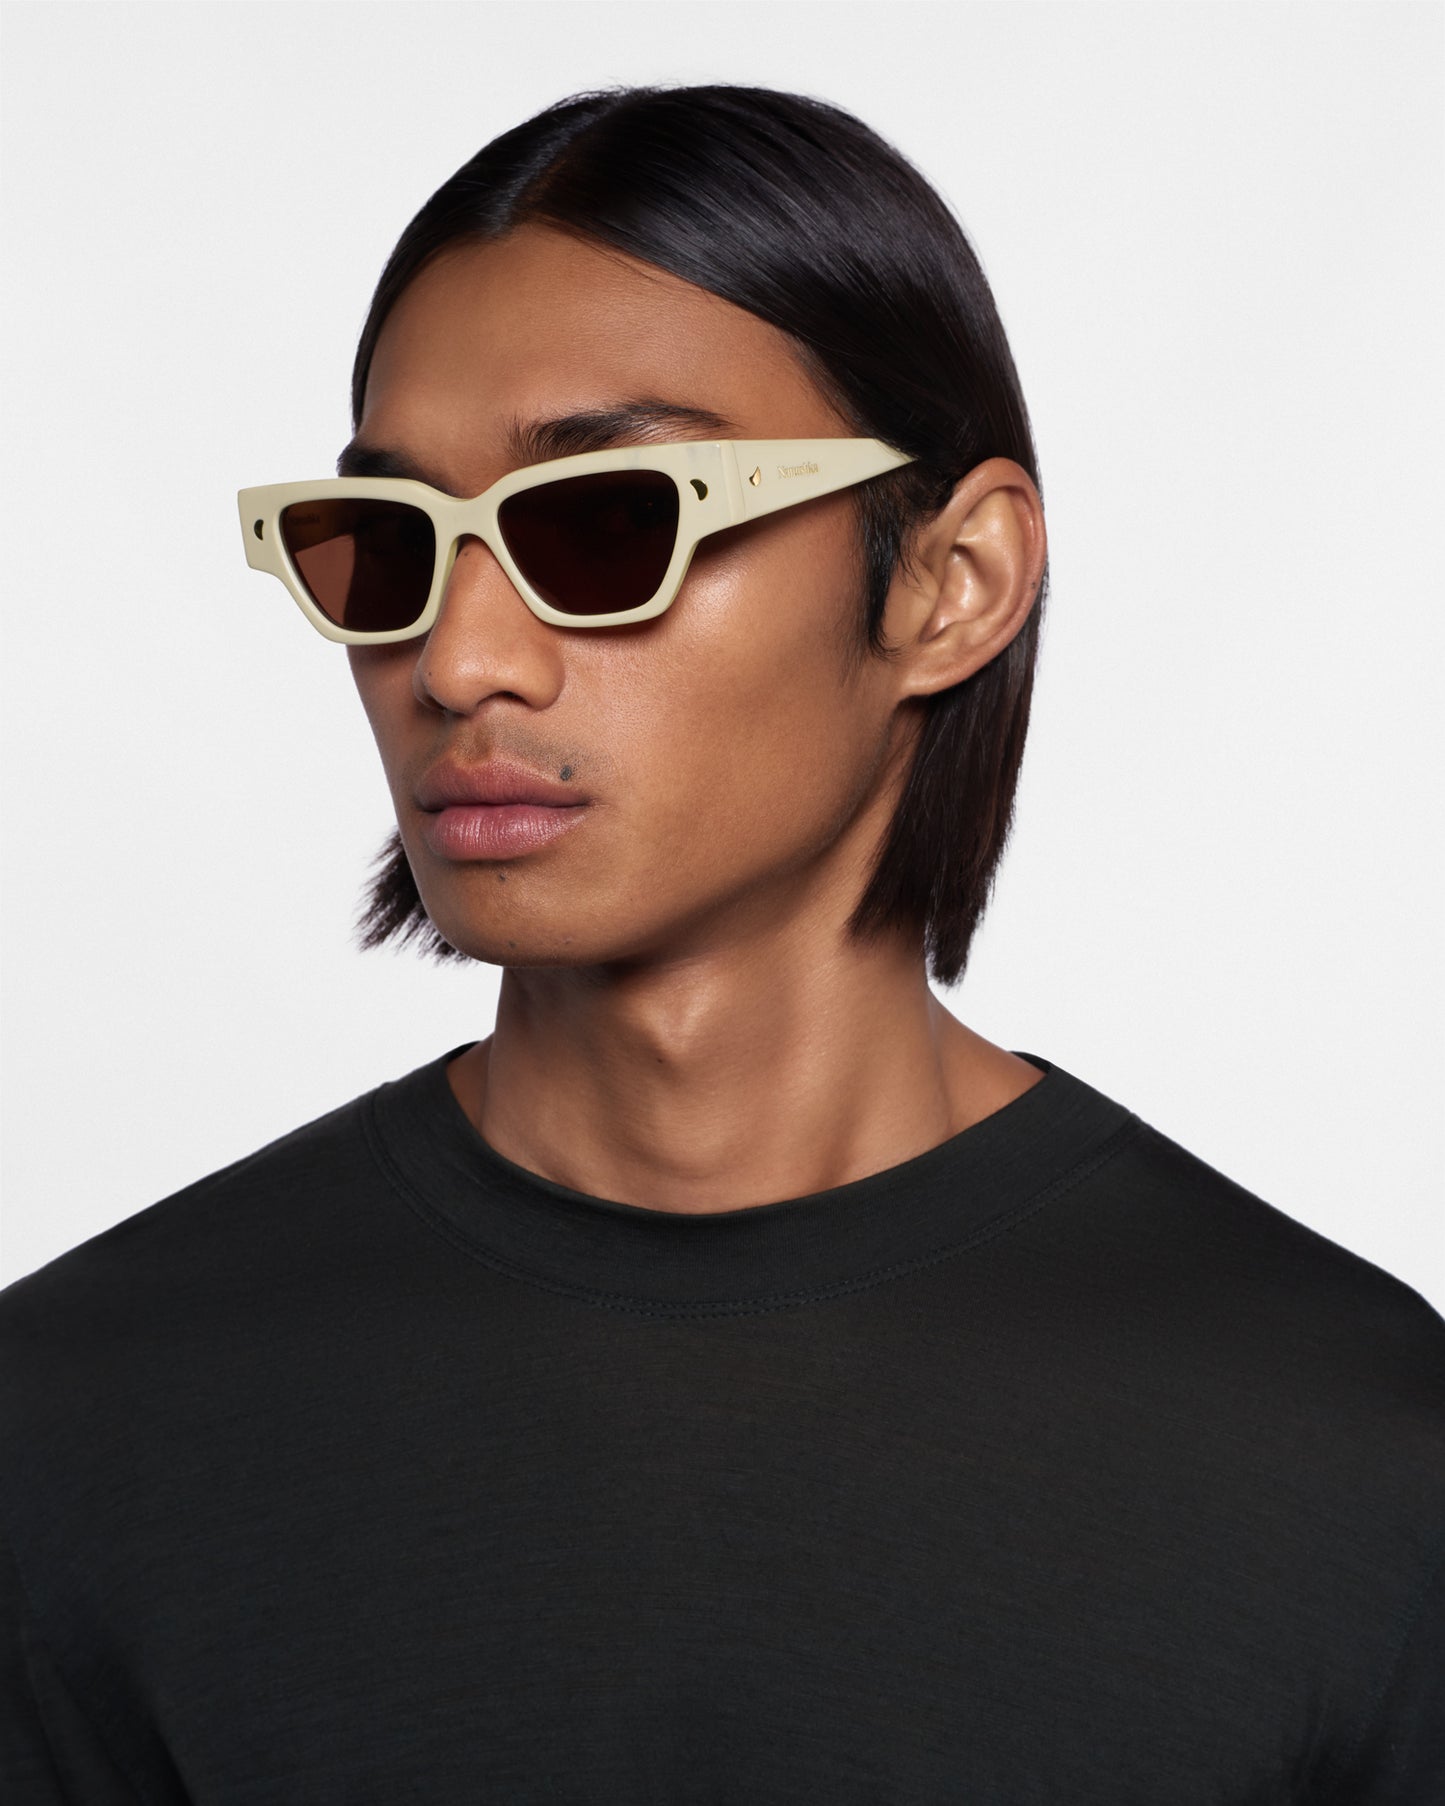 Sazzo - Bio-Plastic D-Frame Sunglasses - Shell